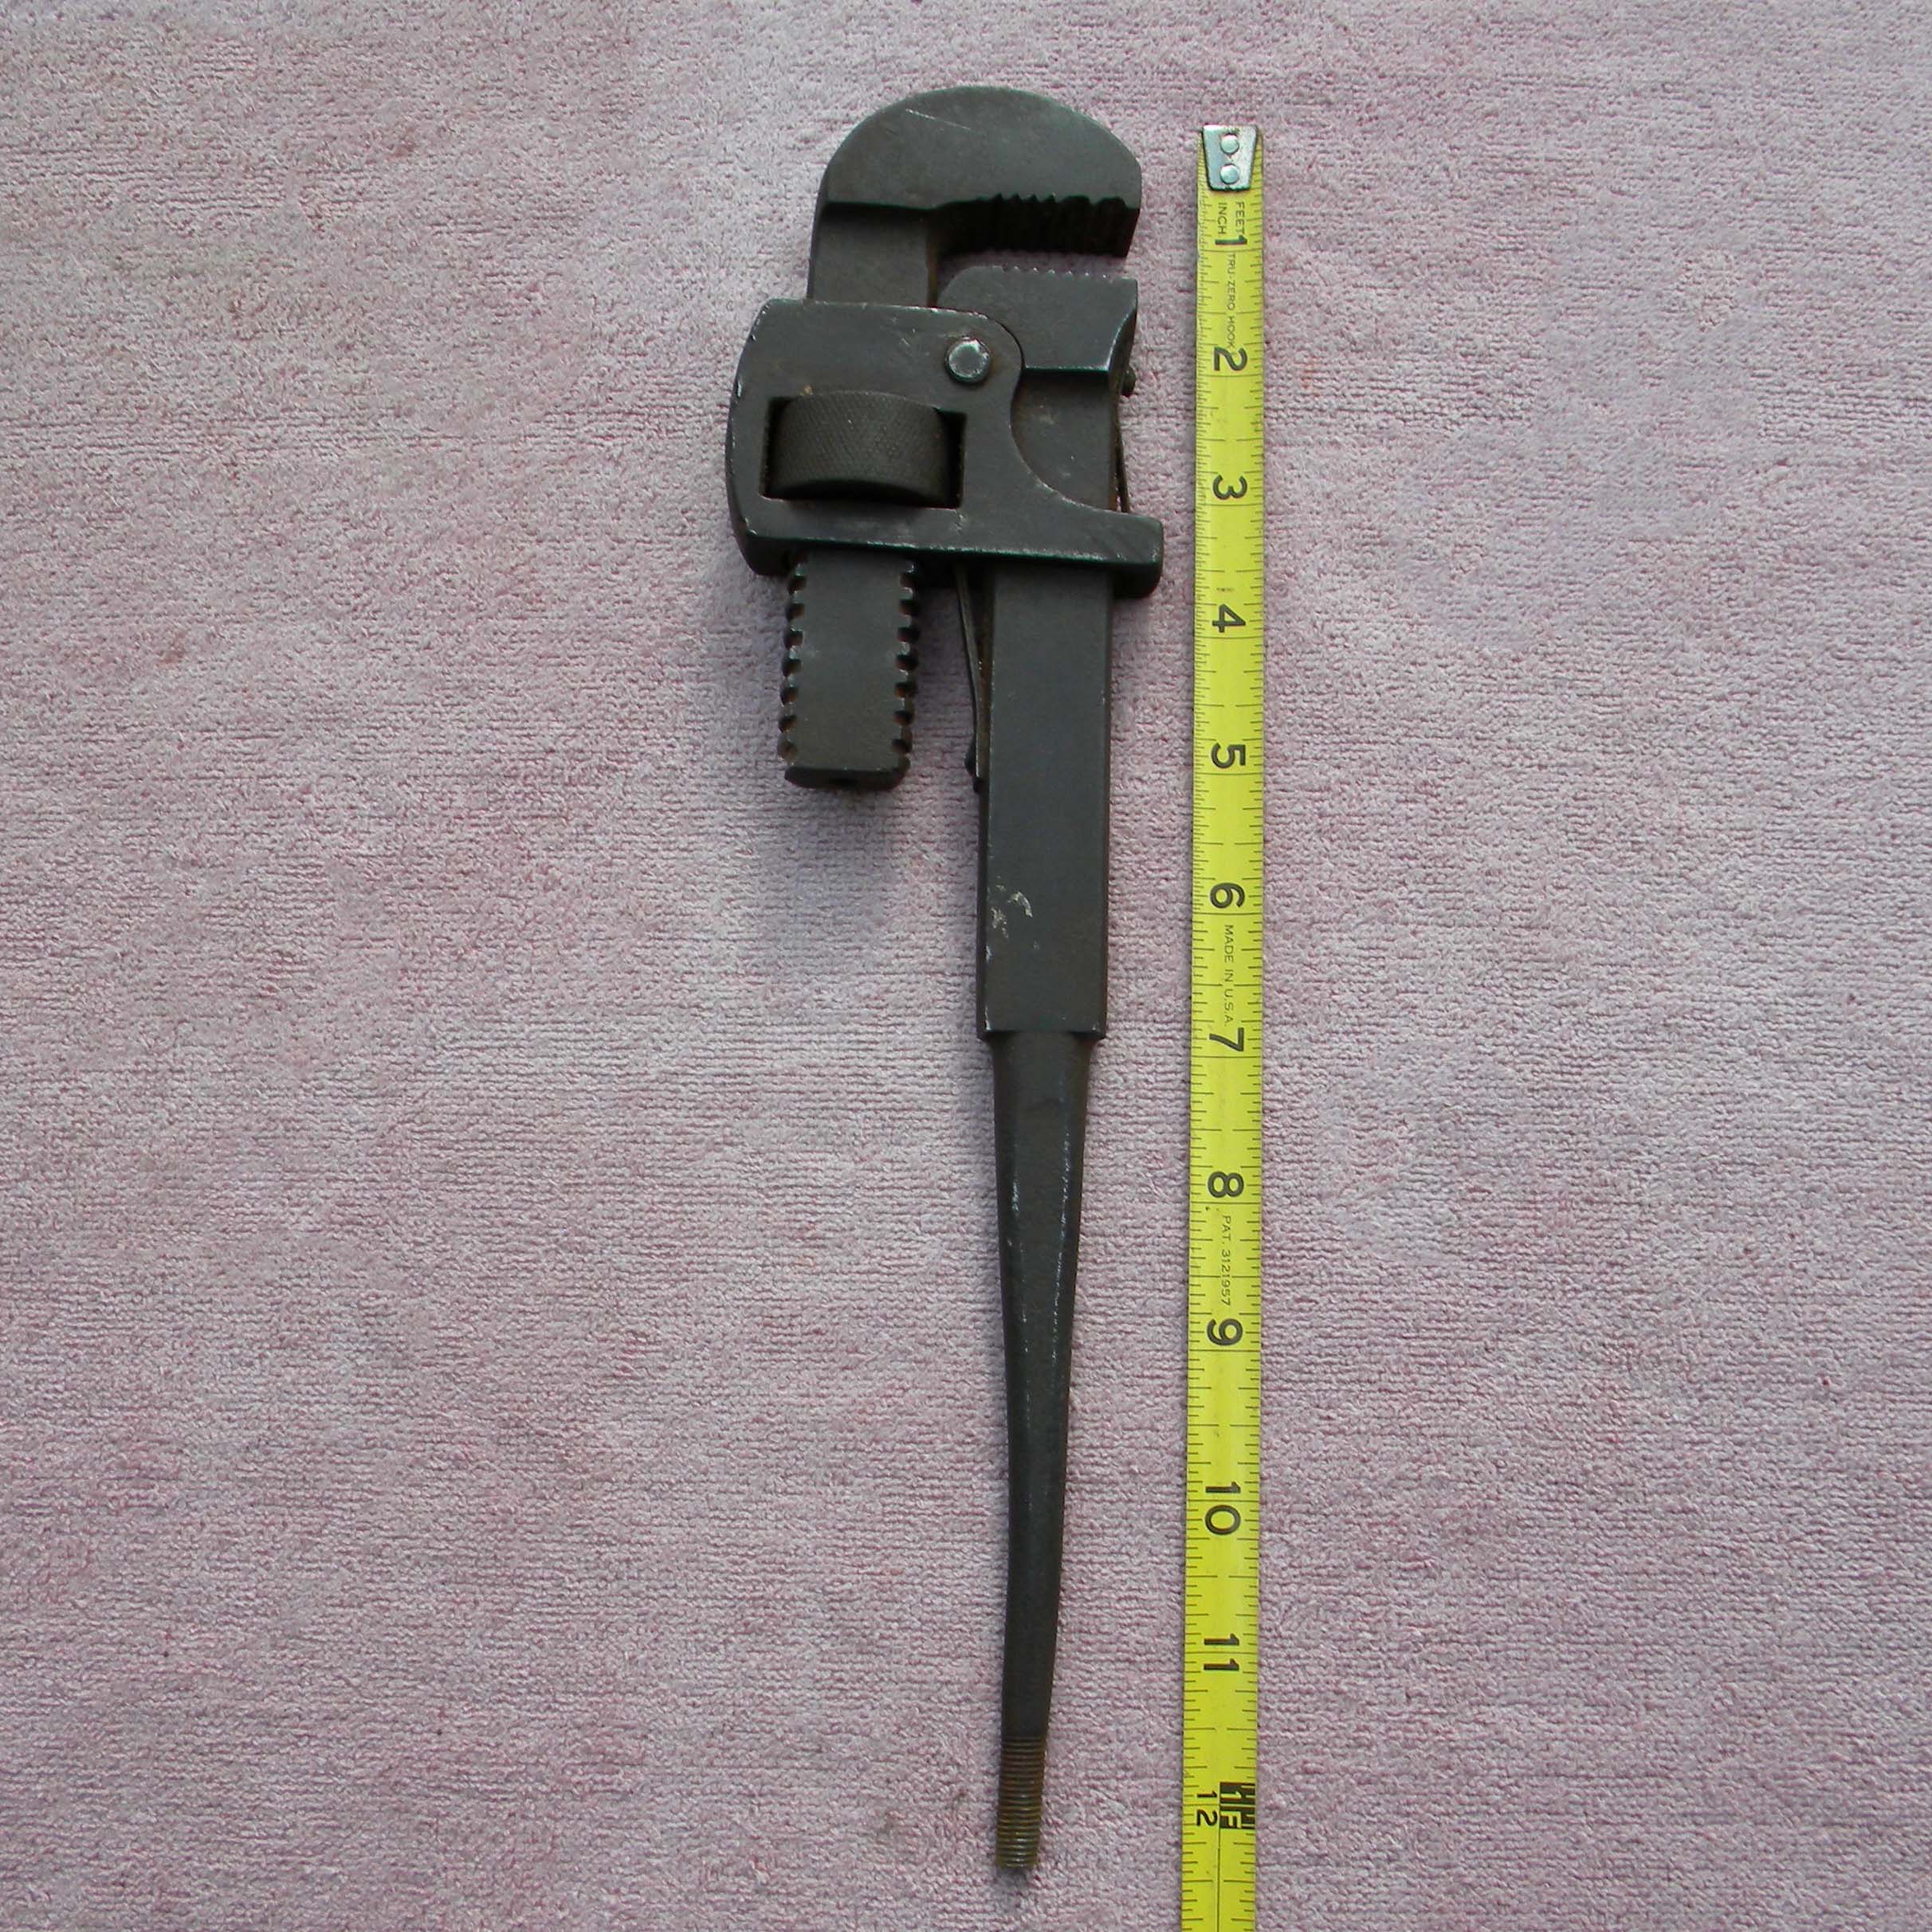 DSCN1166 Top Wrench no handle2.jpg